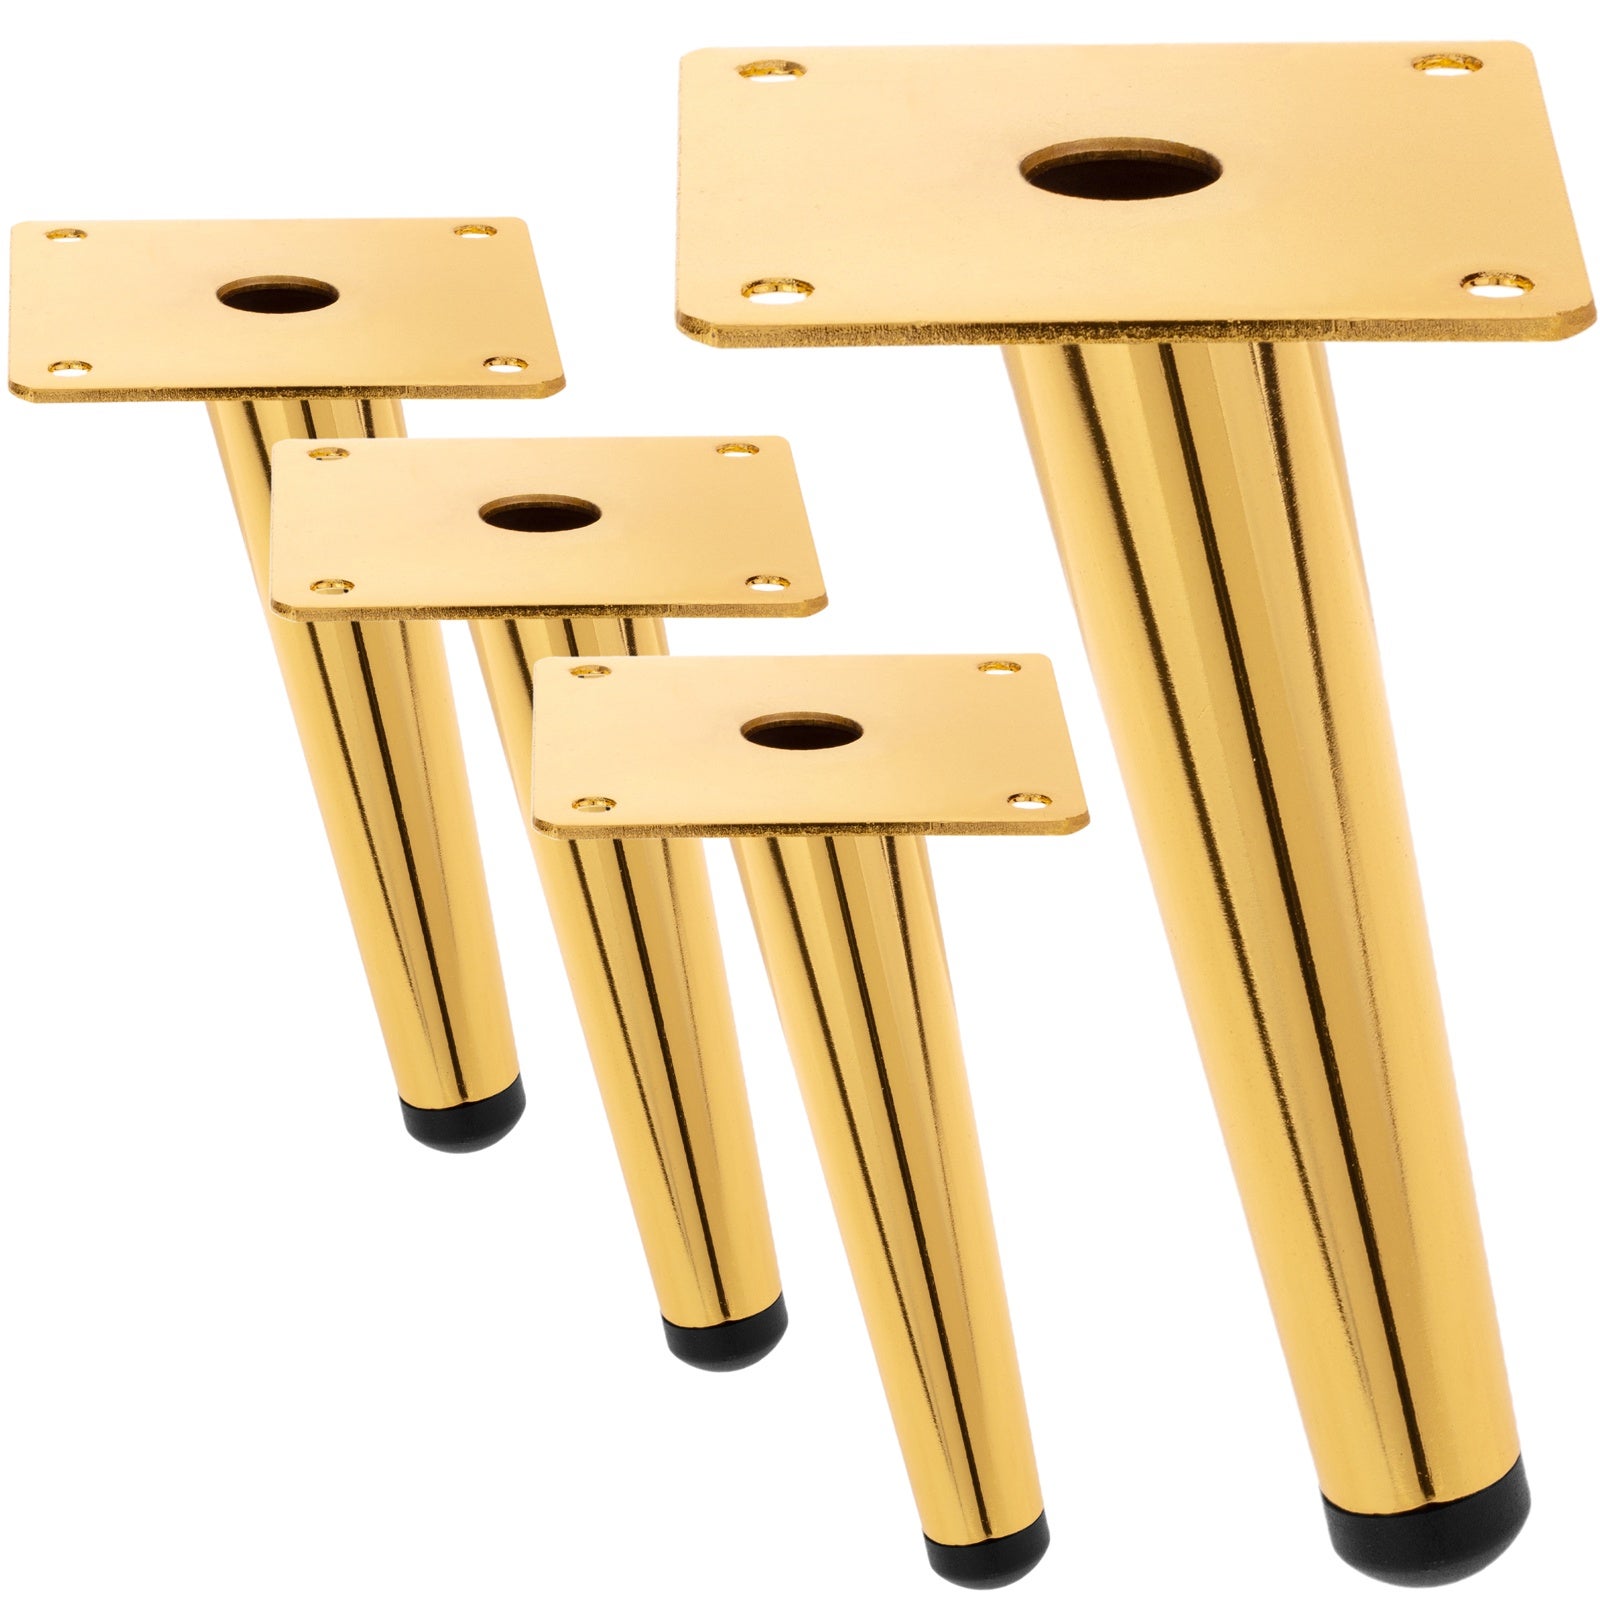  EEUK patas doradas para muebles, juego de 4, redondas, altas,  elegantes, cónicas, patas de muebles, armarios, mesas, patas de metal, con  tornillos de montaje inclinados-9.843 in : Herramientas y Mejoras del